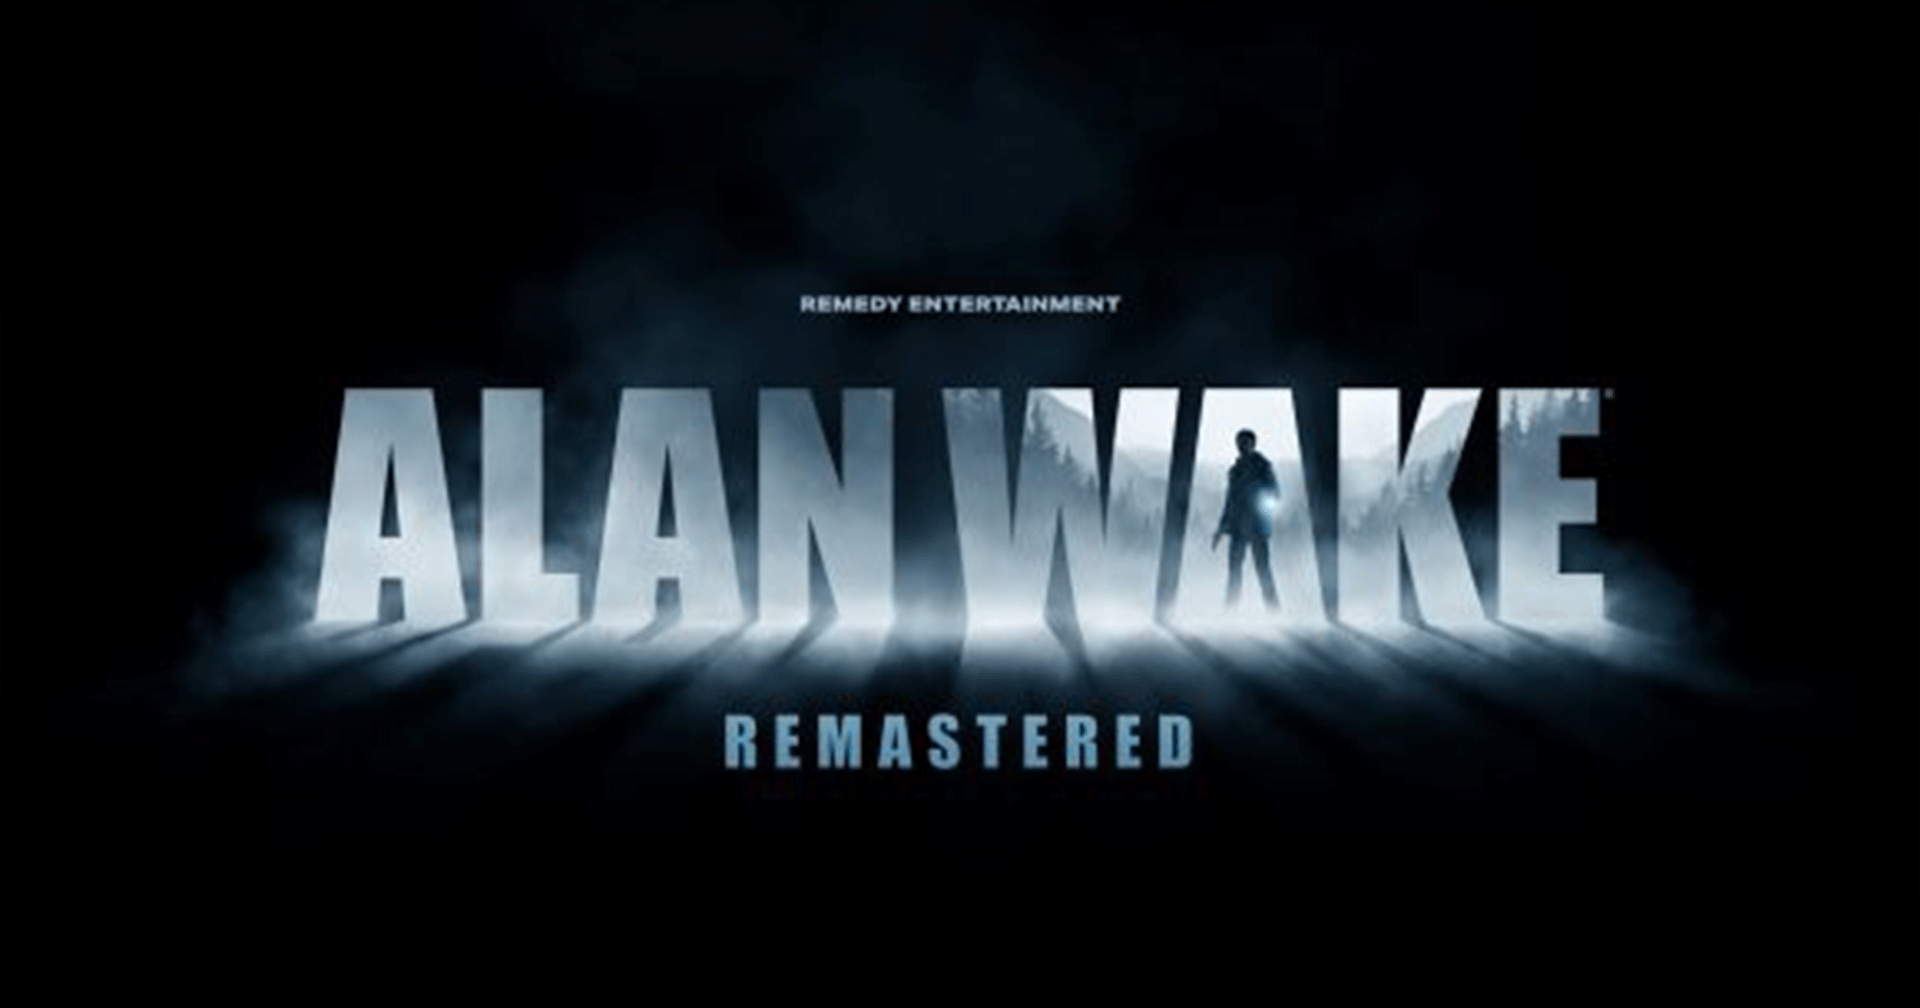 Alan Wake ภาค Remastered ประกาศเปิดตัวอย่างเป็นทางการ พร้อมวางจำหน่ายฤดูใบไม้ร่วงนี้